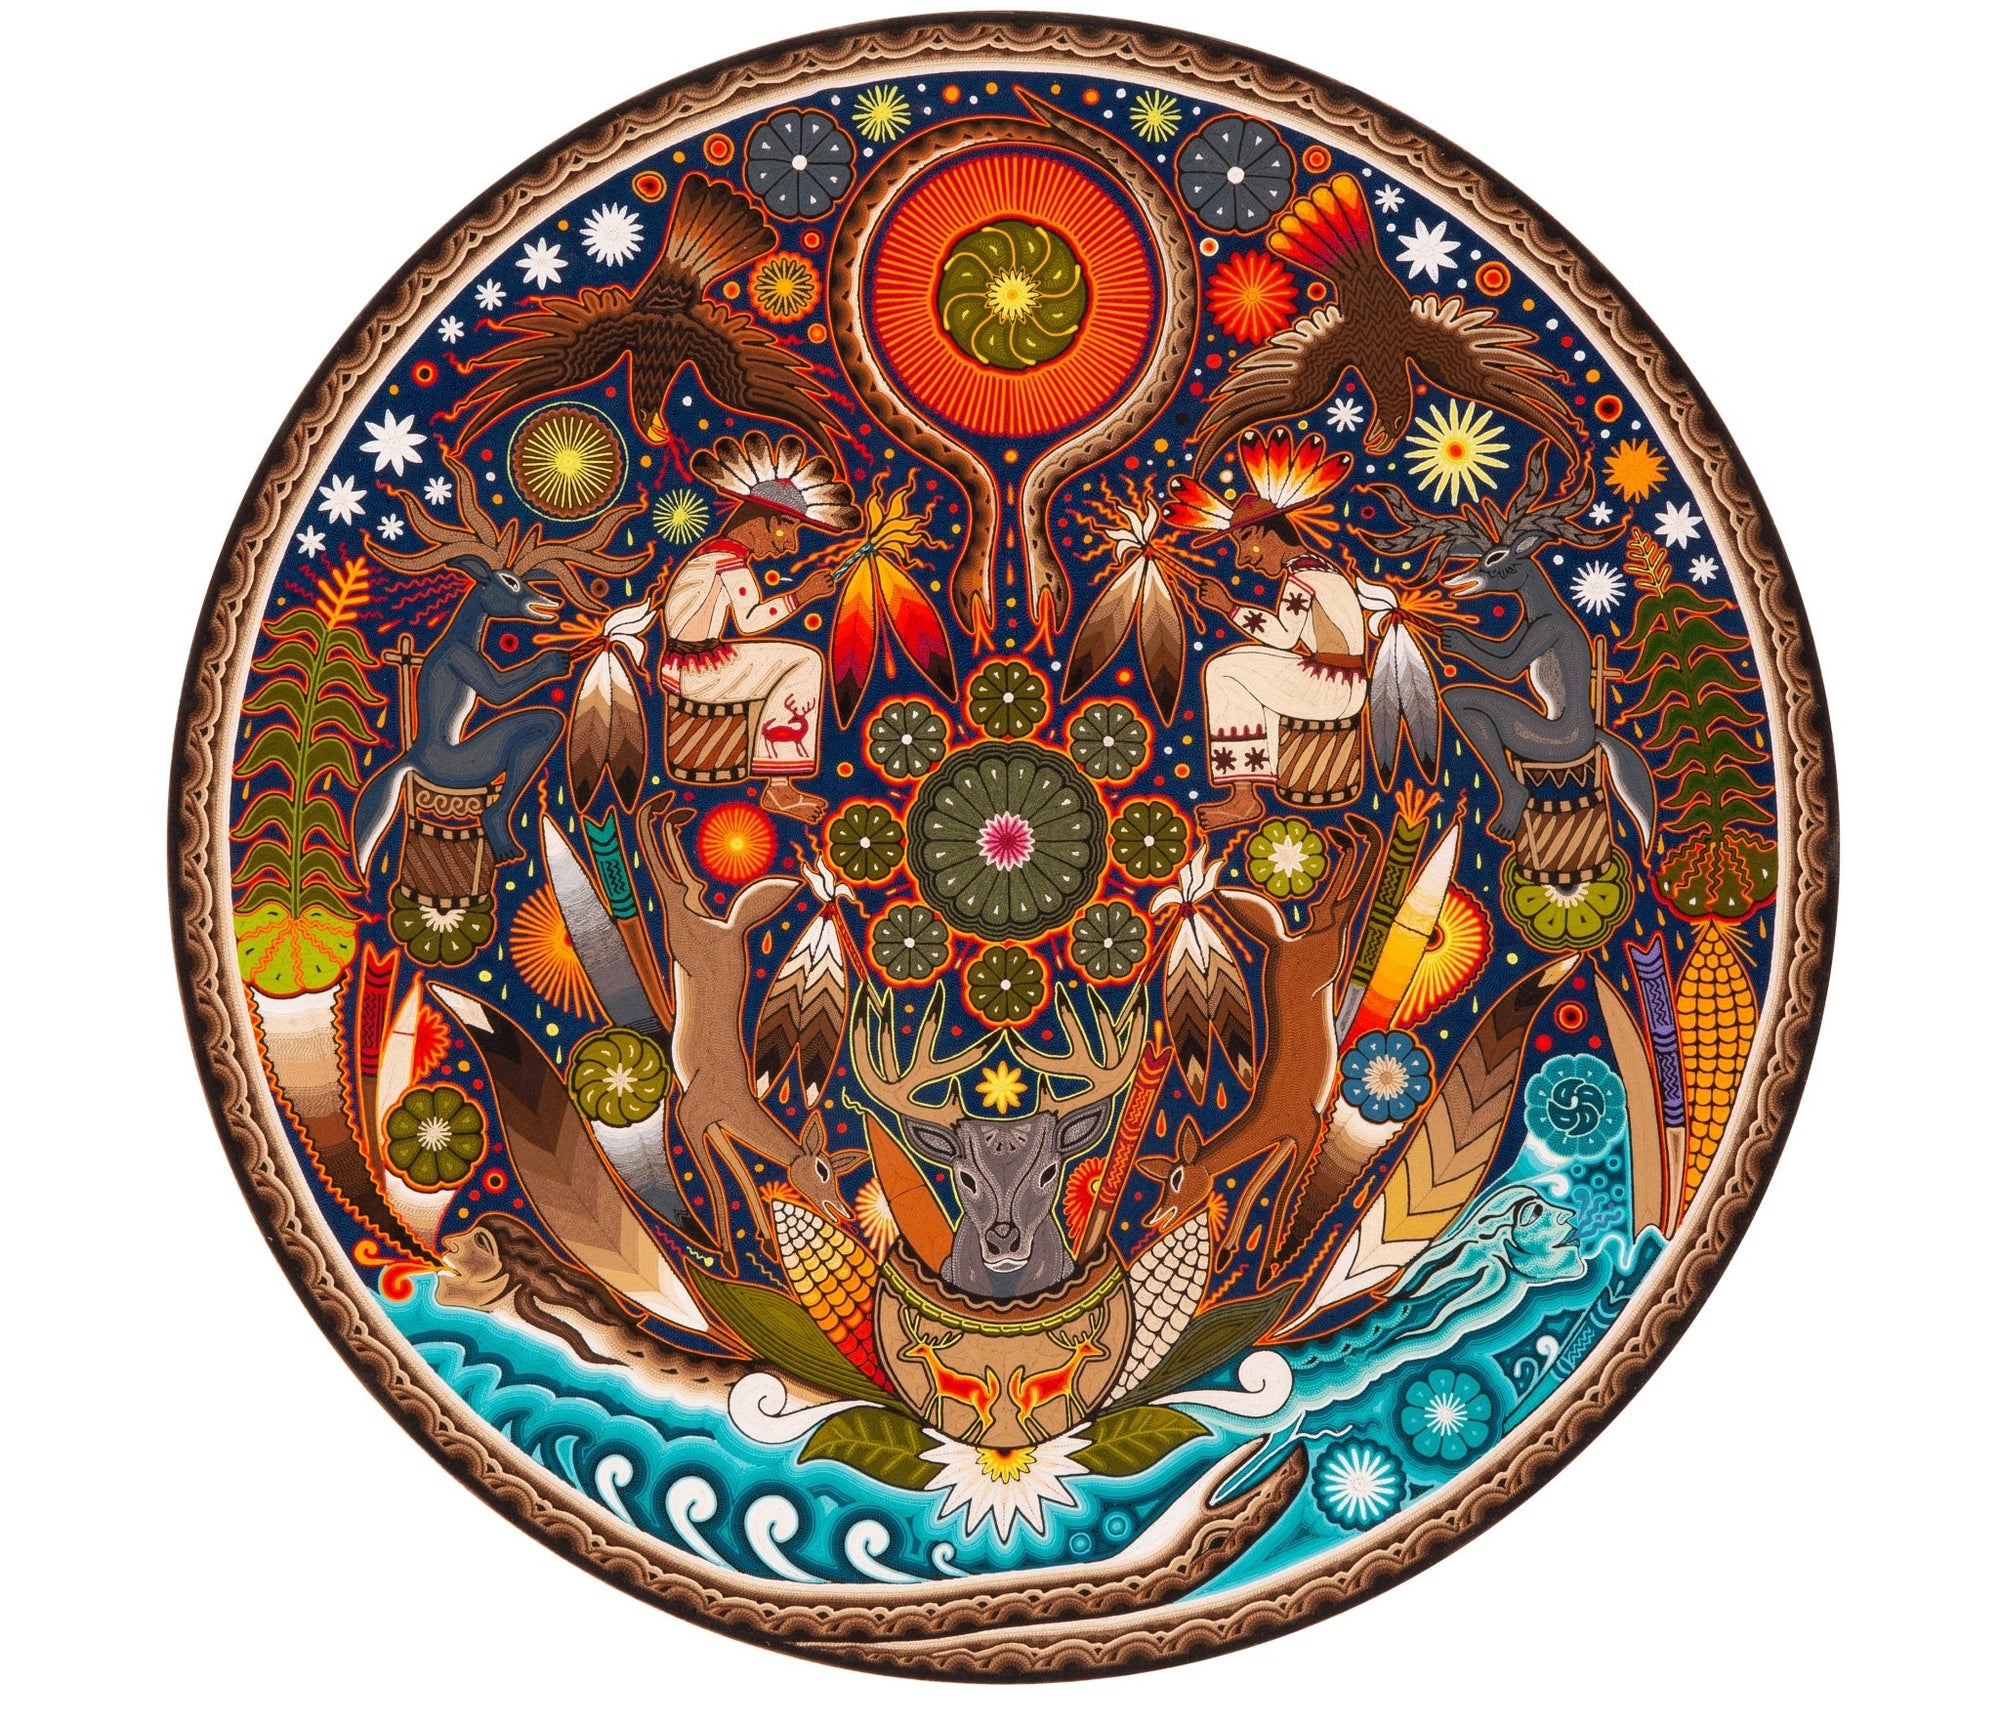 マラアカカメの歌 - 45 x 45 cm。 - 18×18インチ。 - ウイチョル族の芸術 - マラカメ